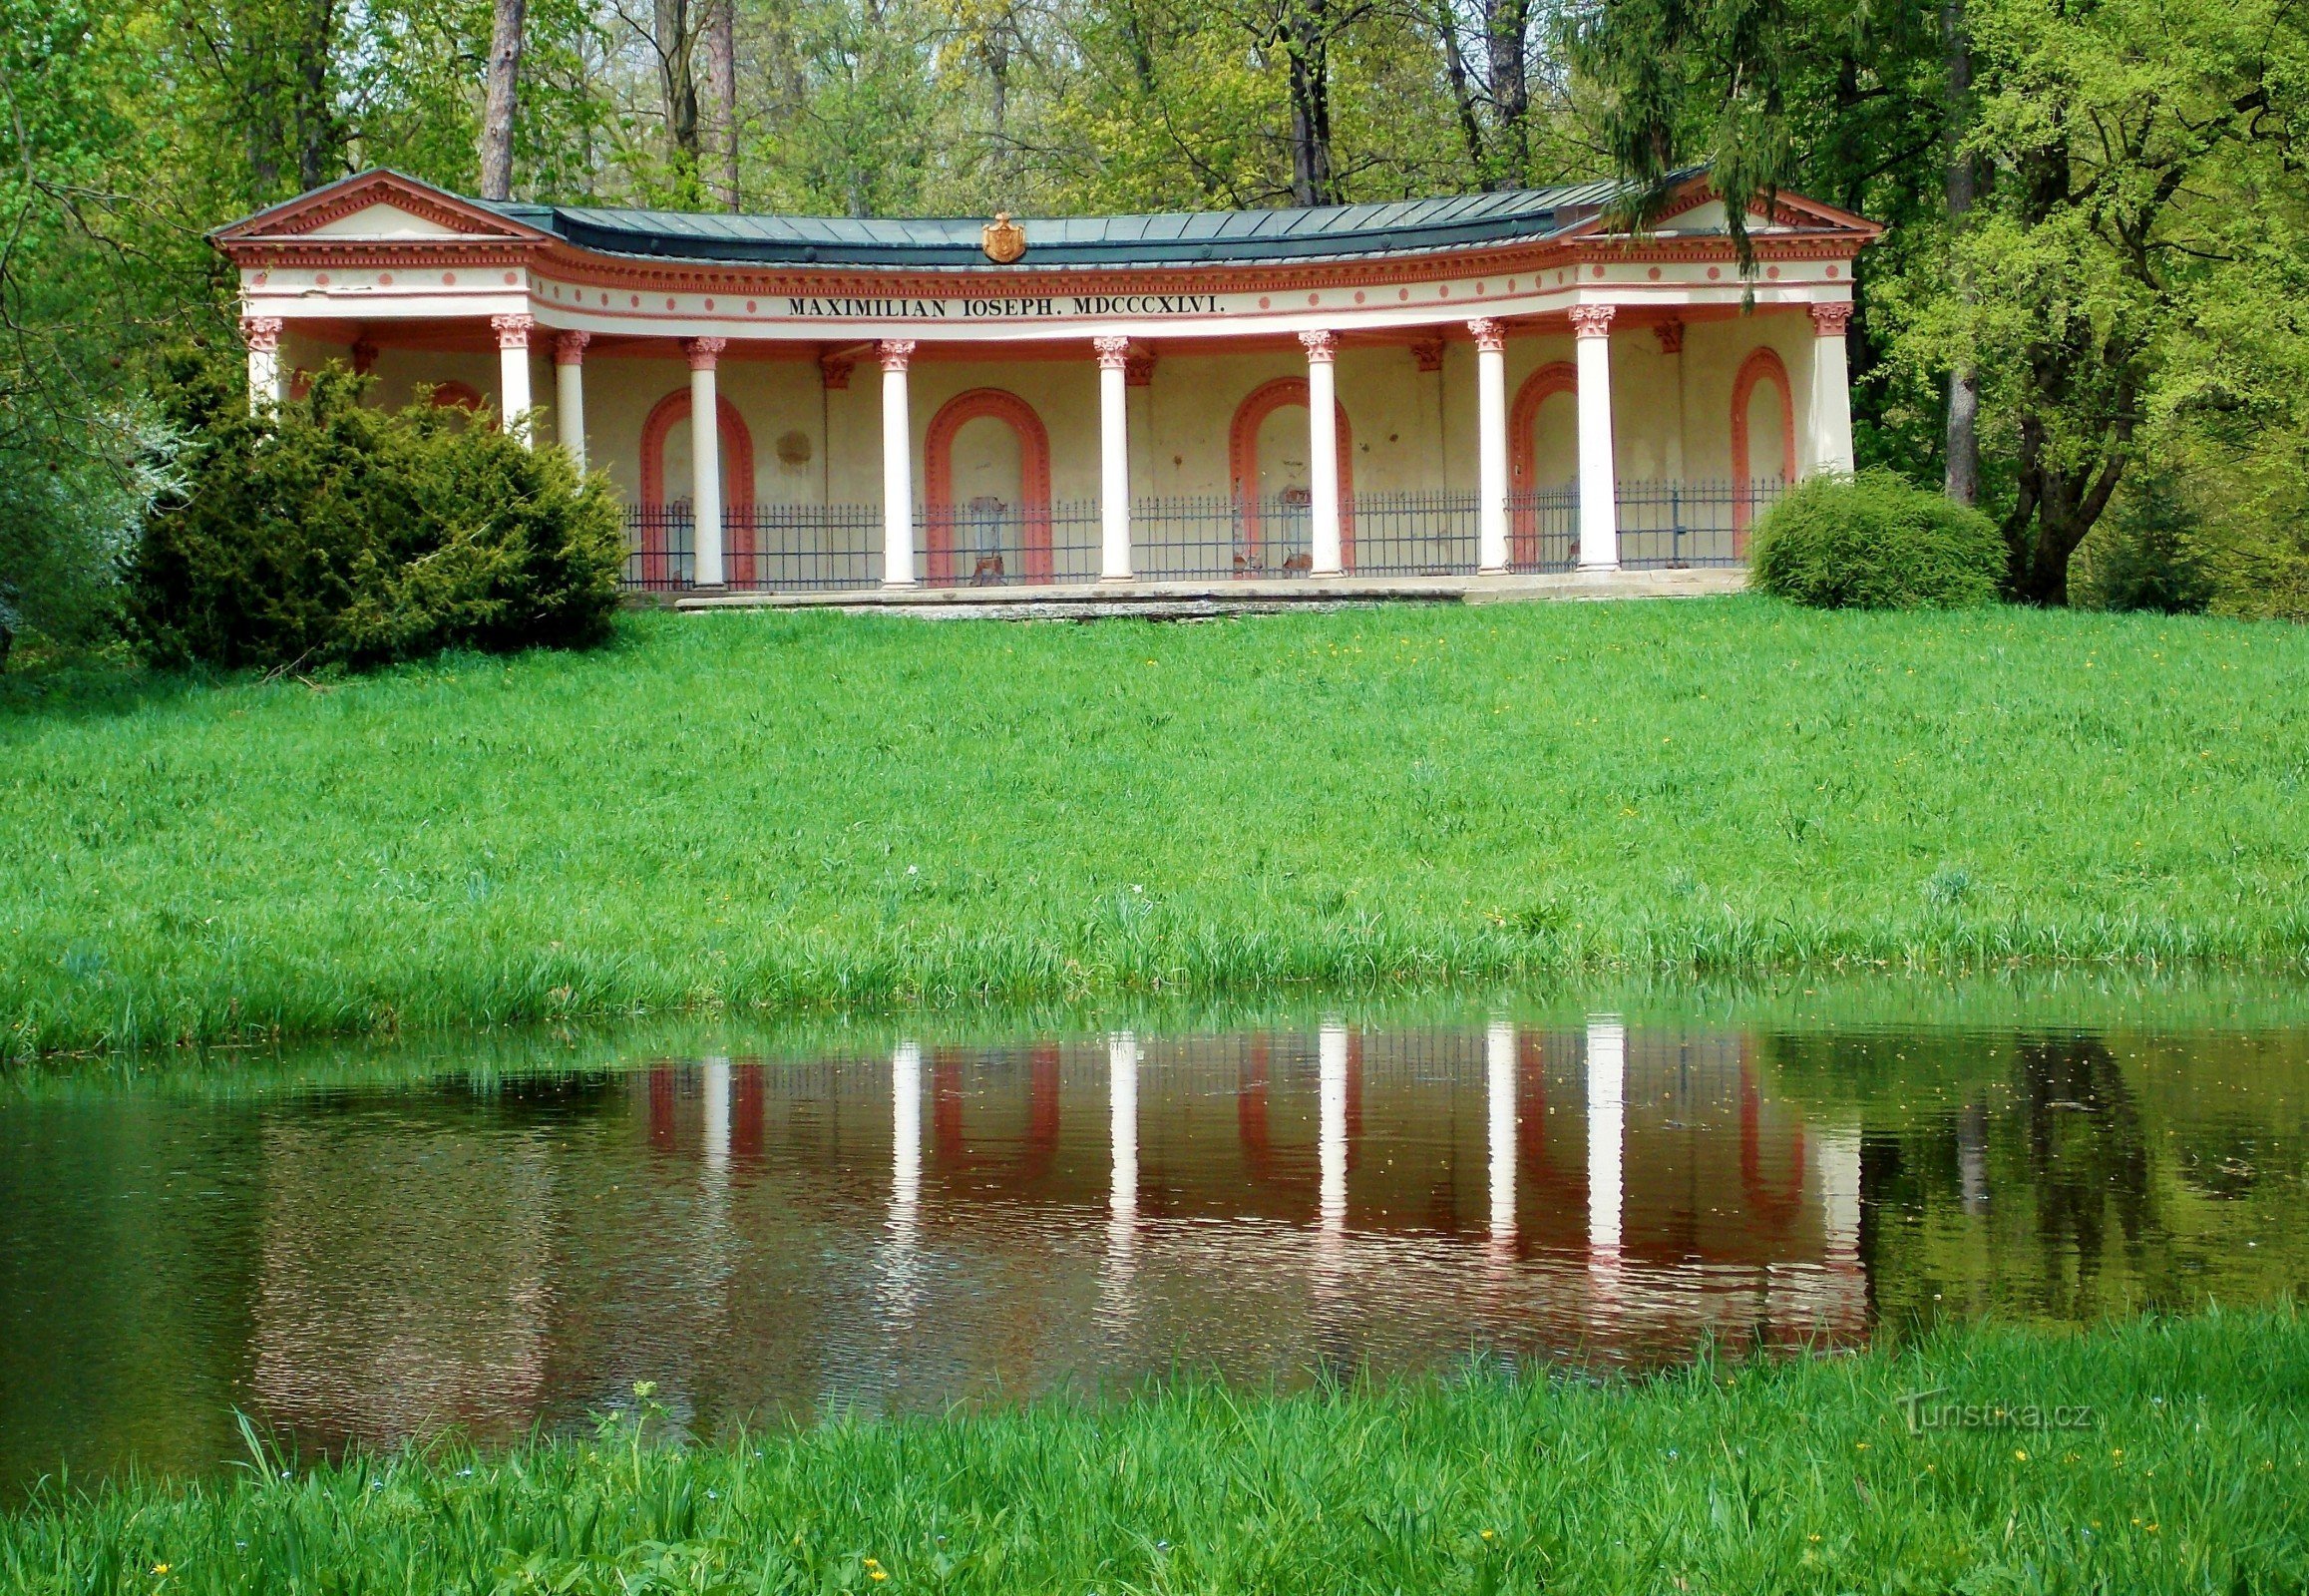 Naar de Podzámecká-tuin in Kroměříž, rond de zuilengalerij van Pompej